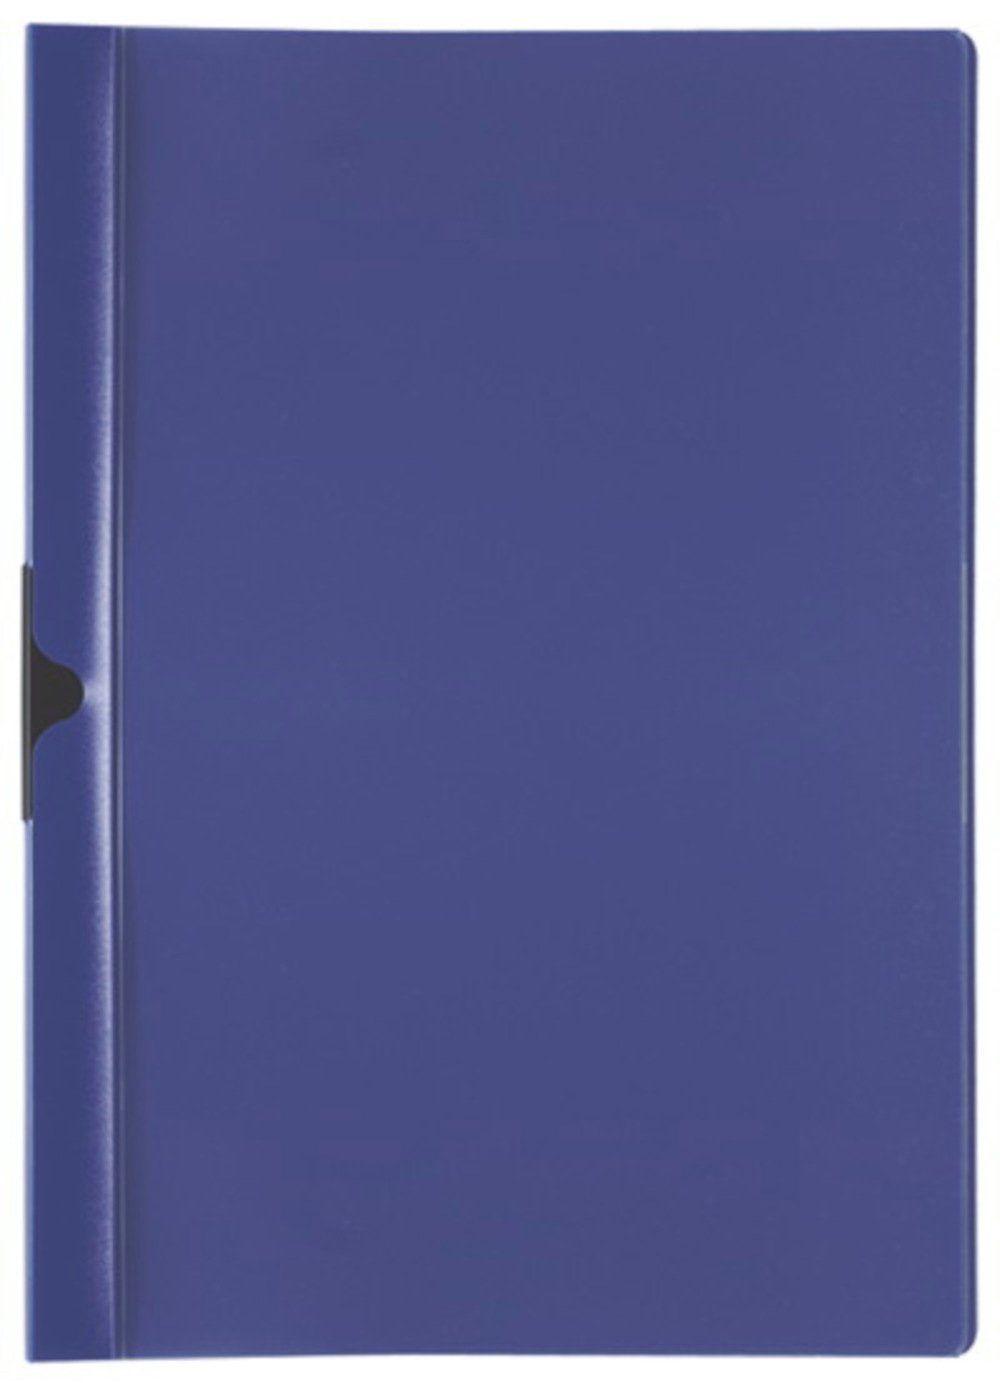 Stylex Schreibwaren Hefter 20 Cliphefter A4 Klemmhefter Bewerbungsmappe blau